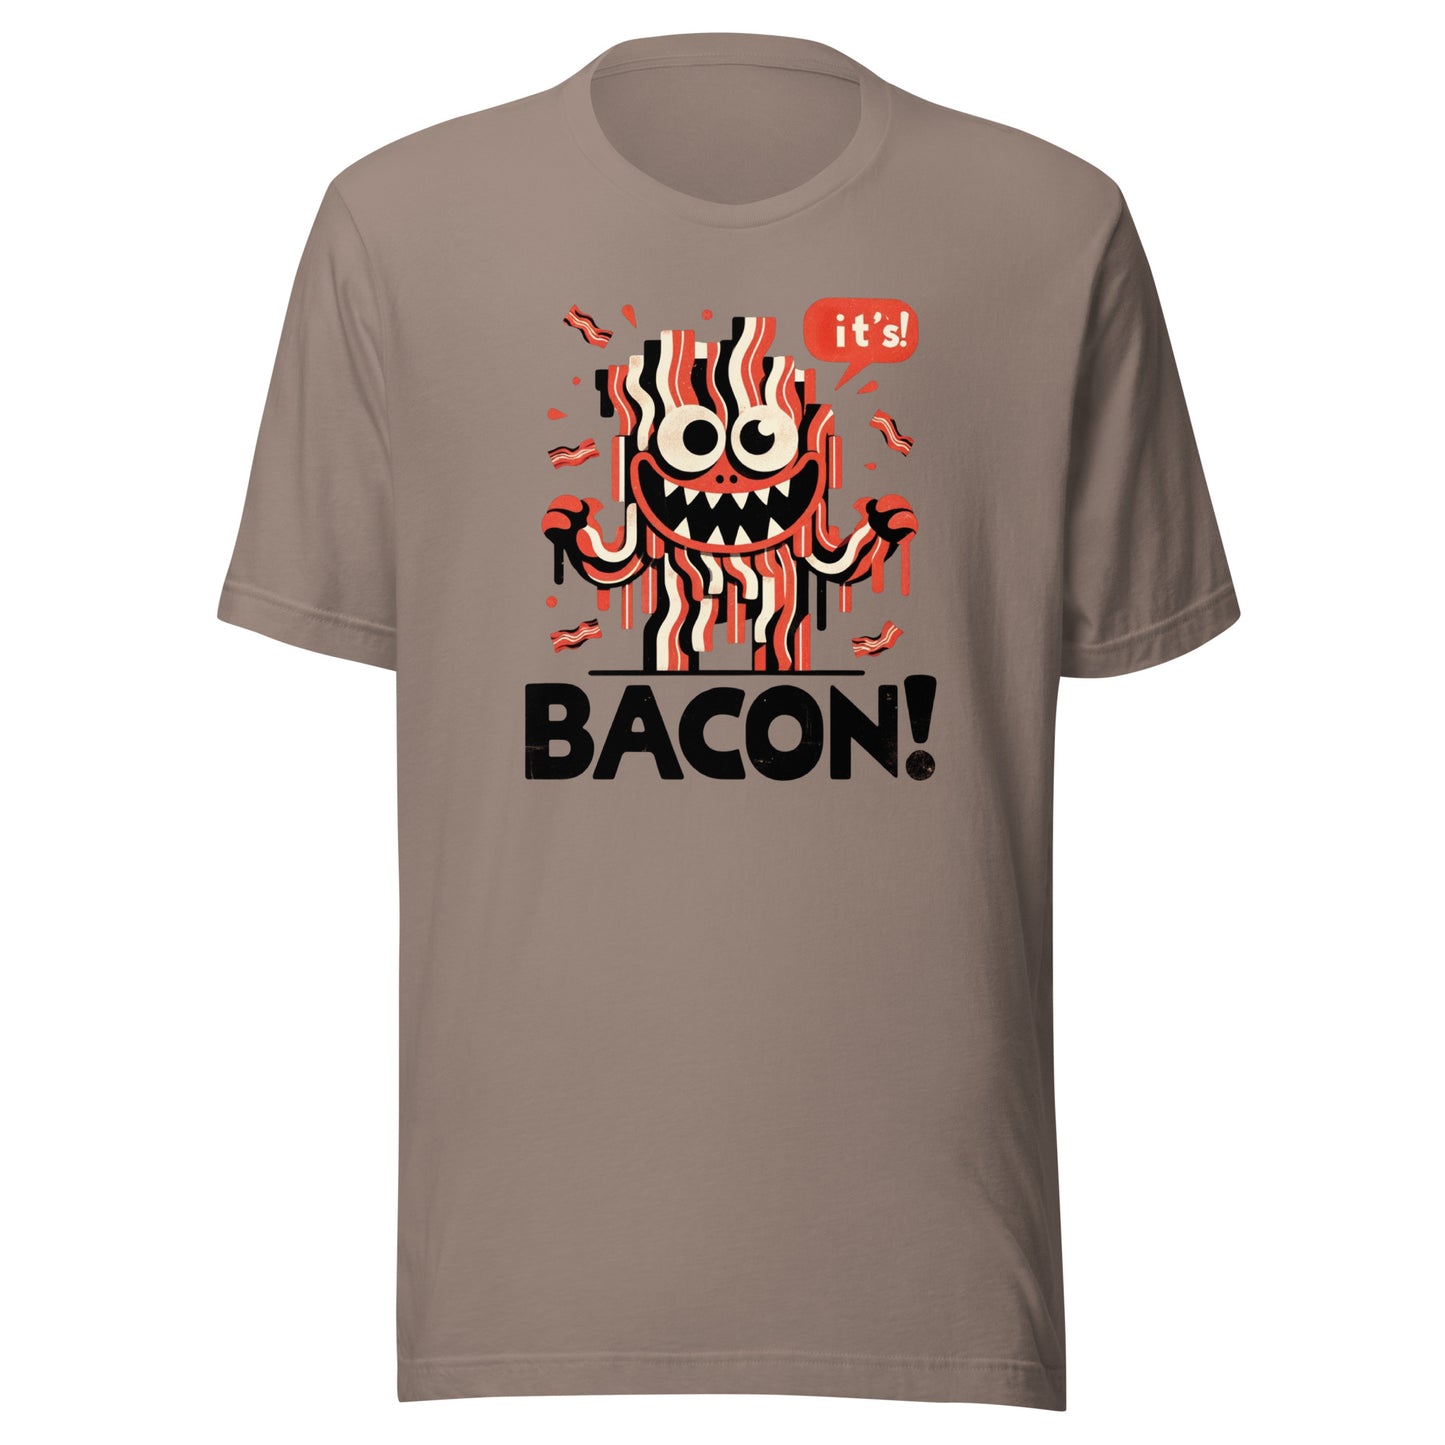 Bacon Monster Unisex t-shirt